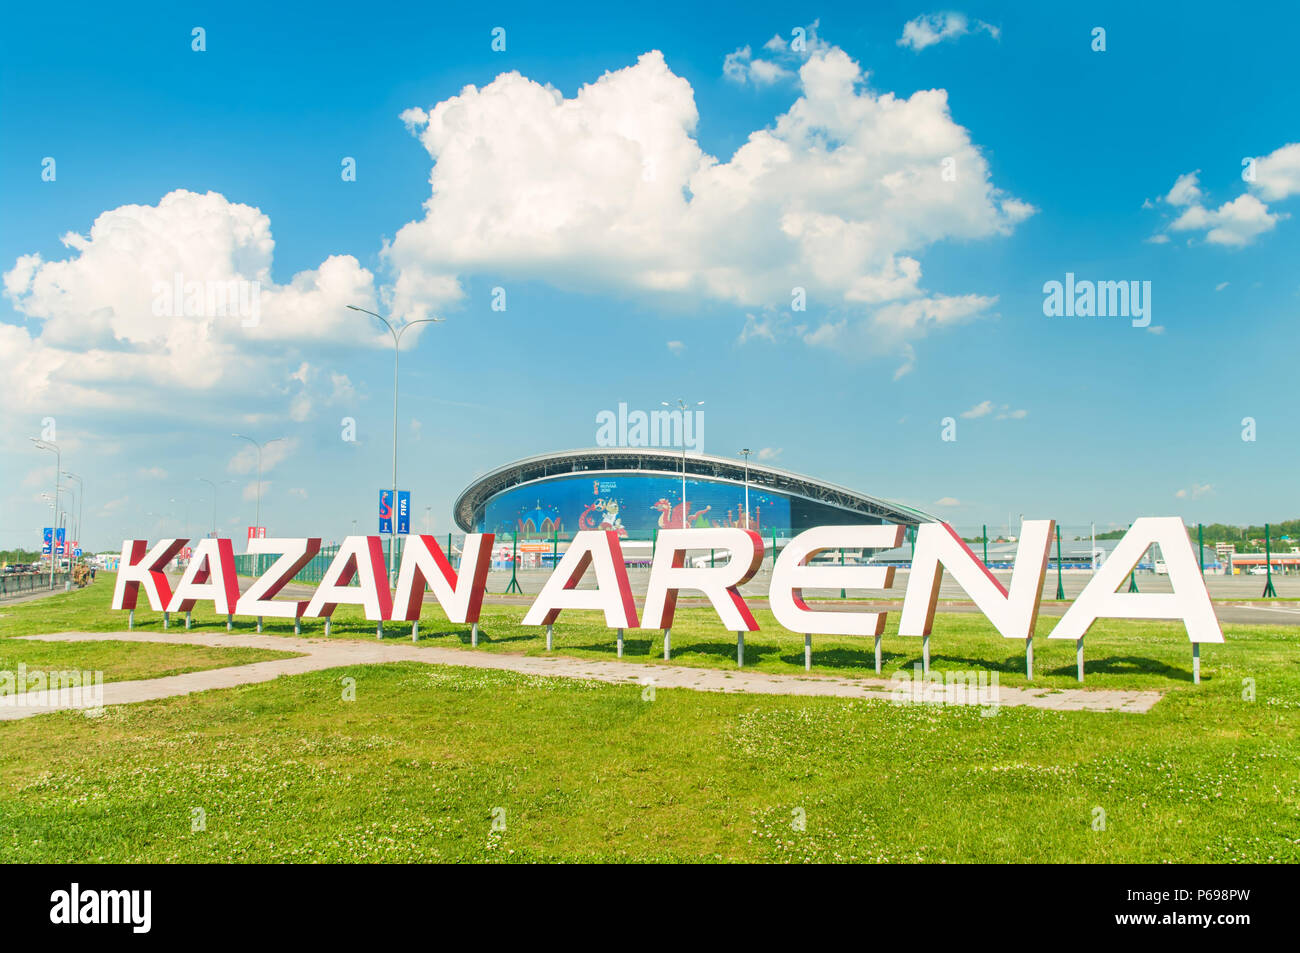 KAZAN, Rusia - 25 de junio, 2018: Vista de Kazan estadio Arena con gran cartel sobre el pasto verde en primer plano y la construcción del estadio con pantalla grande en backgrou Foto de stock